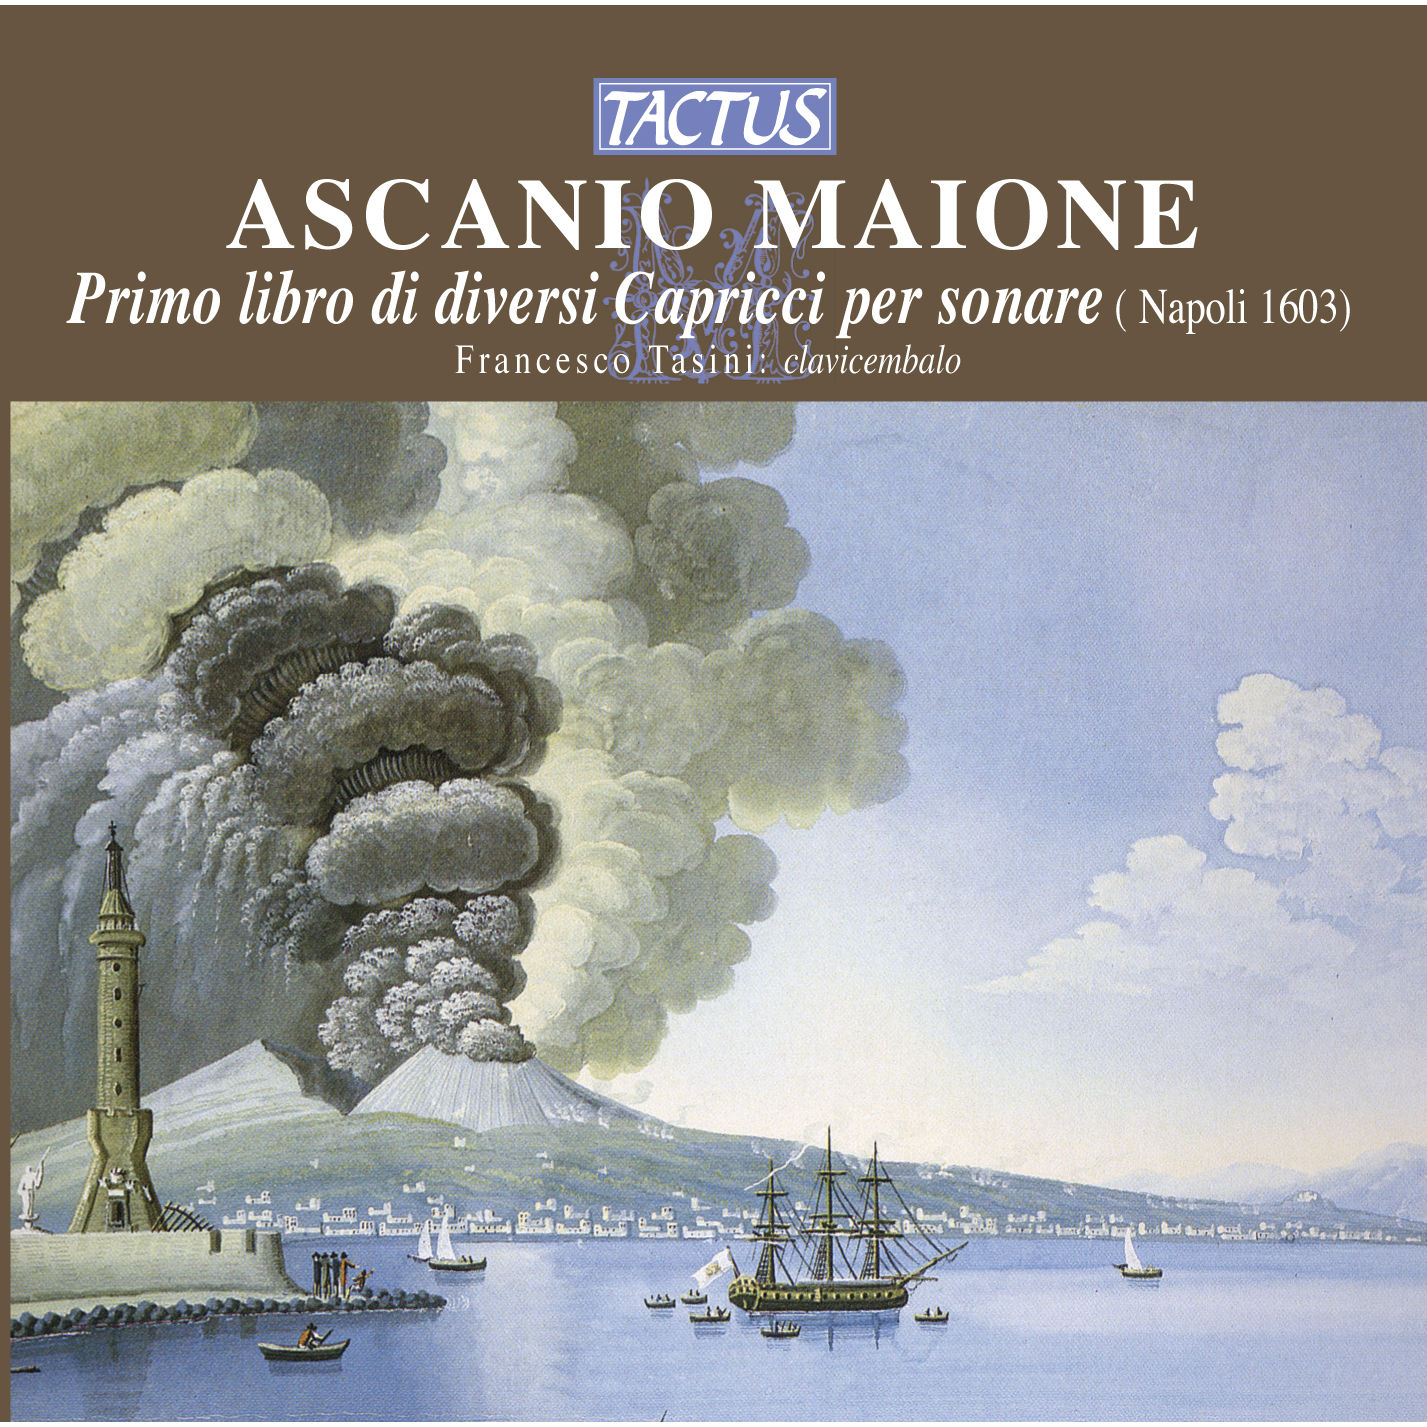 Maione - Primo libro di diversi Capricci per sonare, 1603 - Francesco Tasini, harpsichord